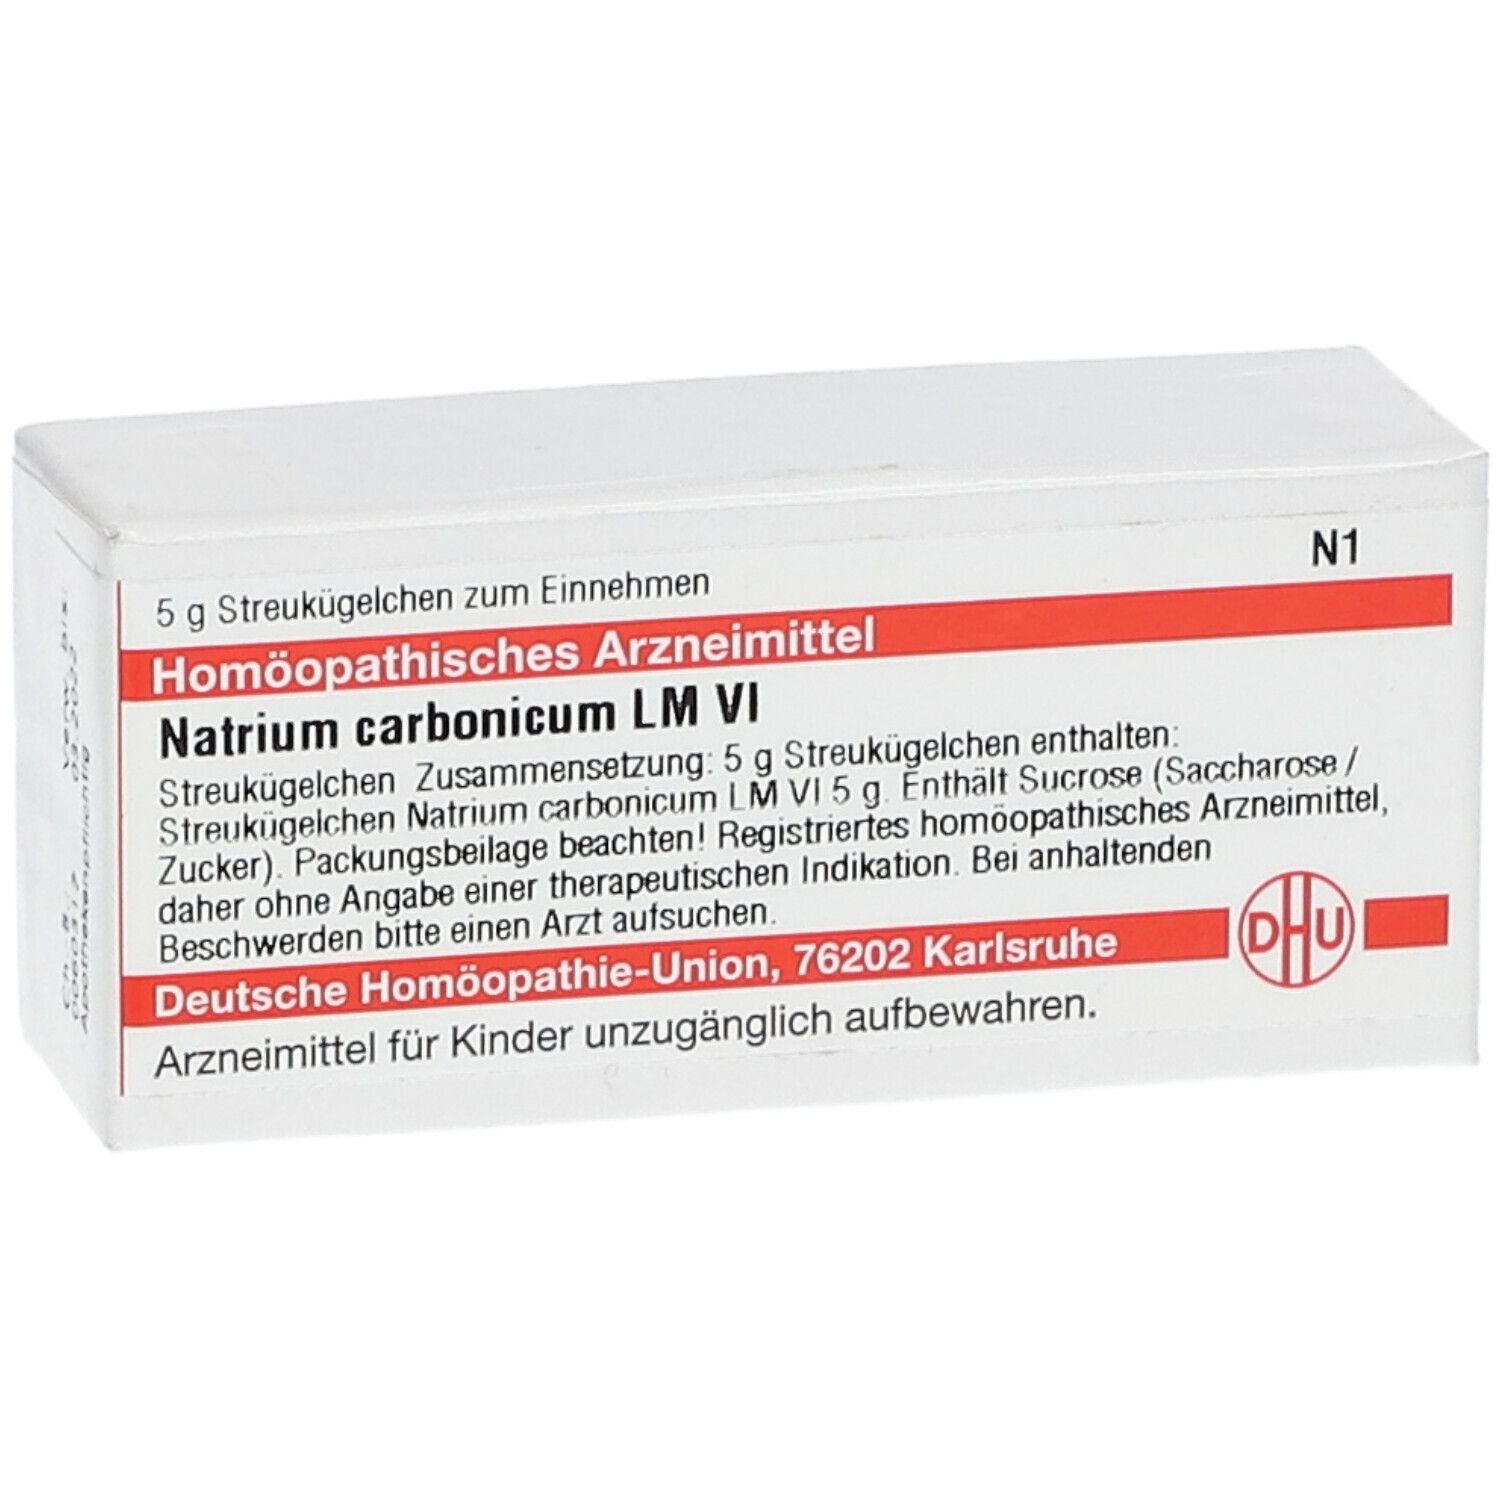 DHU Natrium Carbonicum LM VI